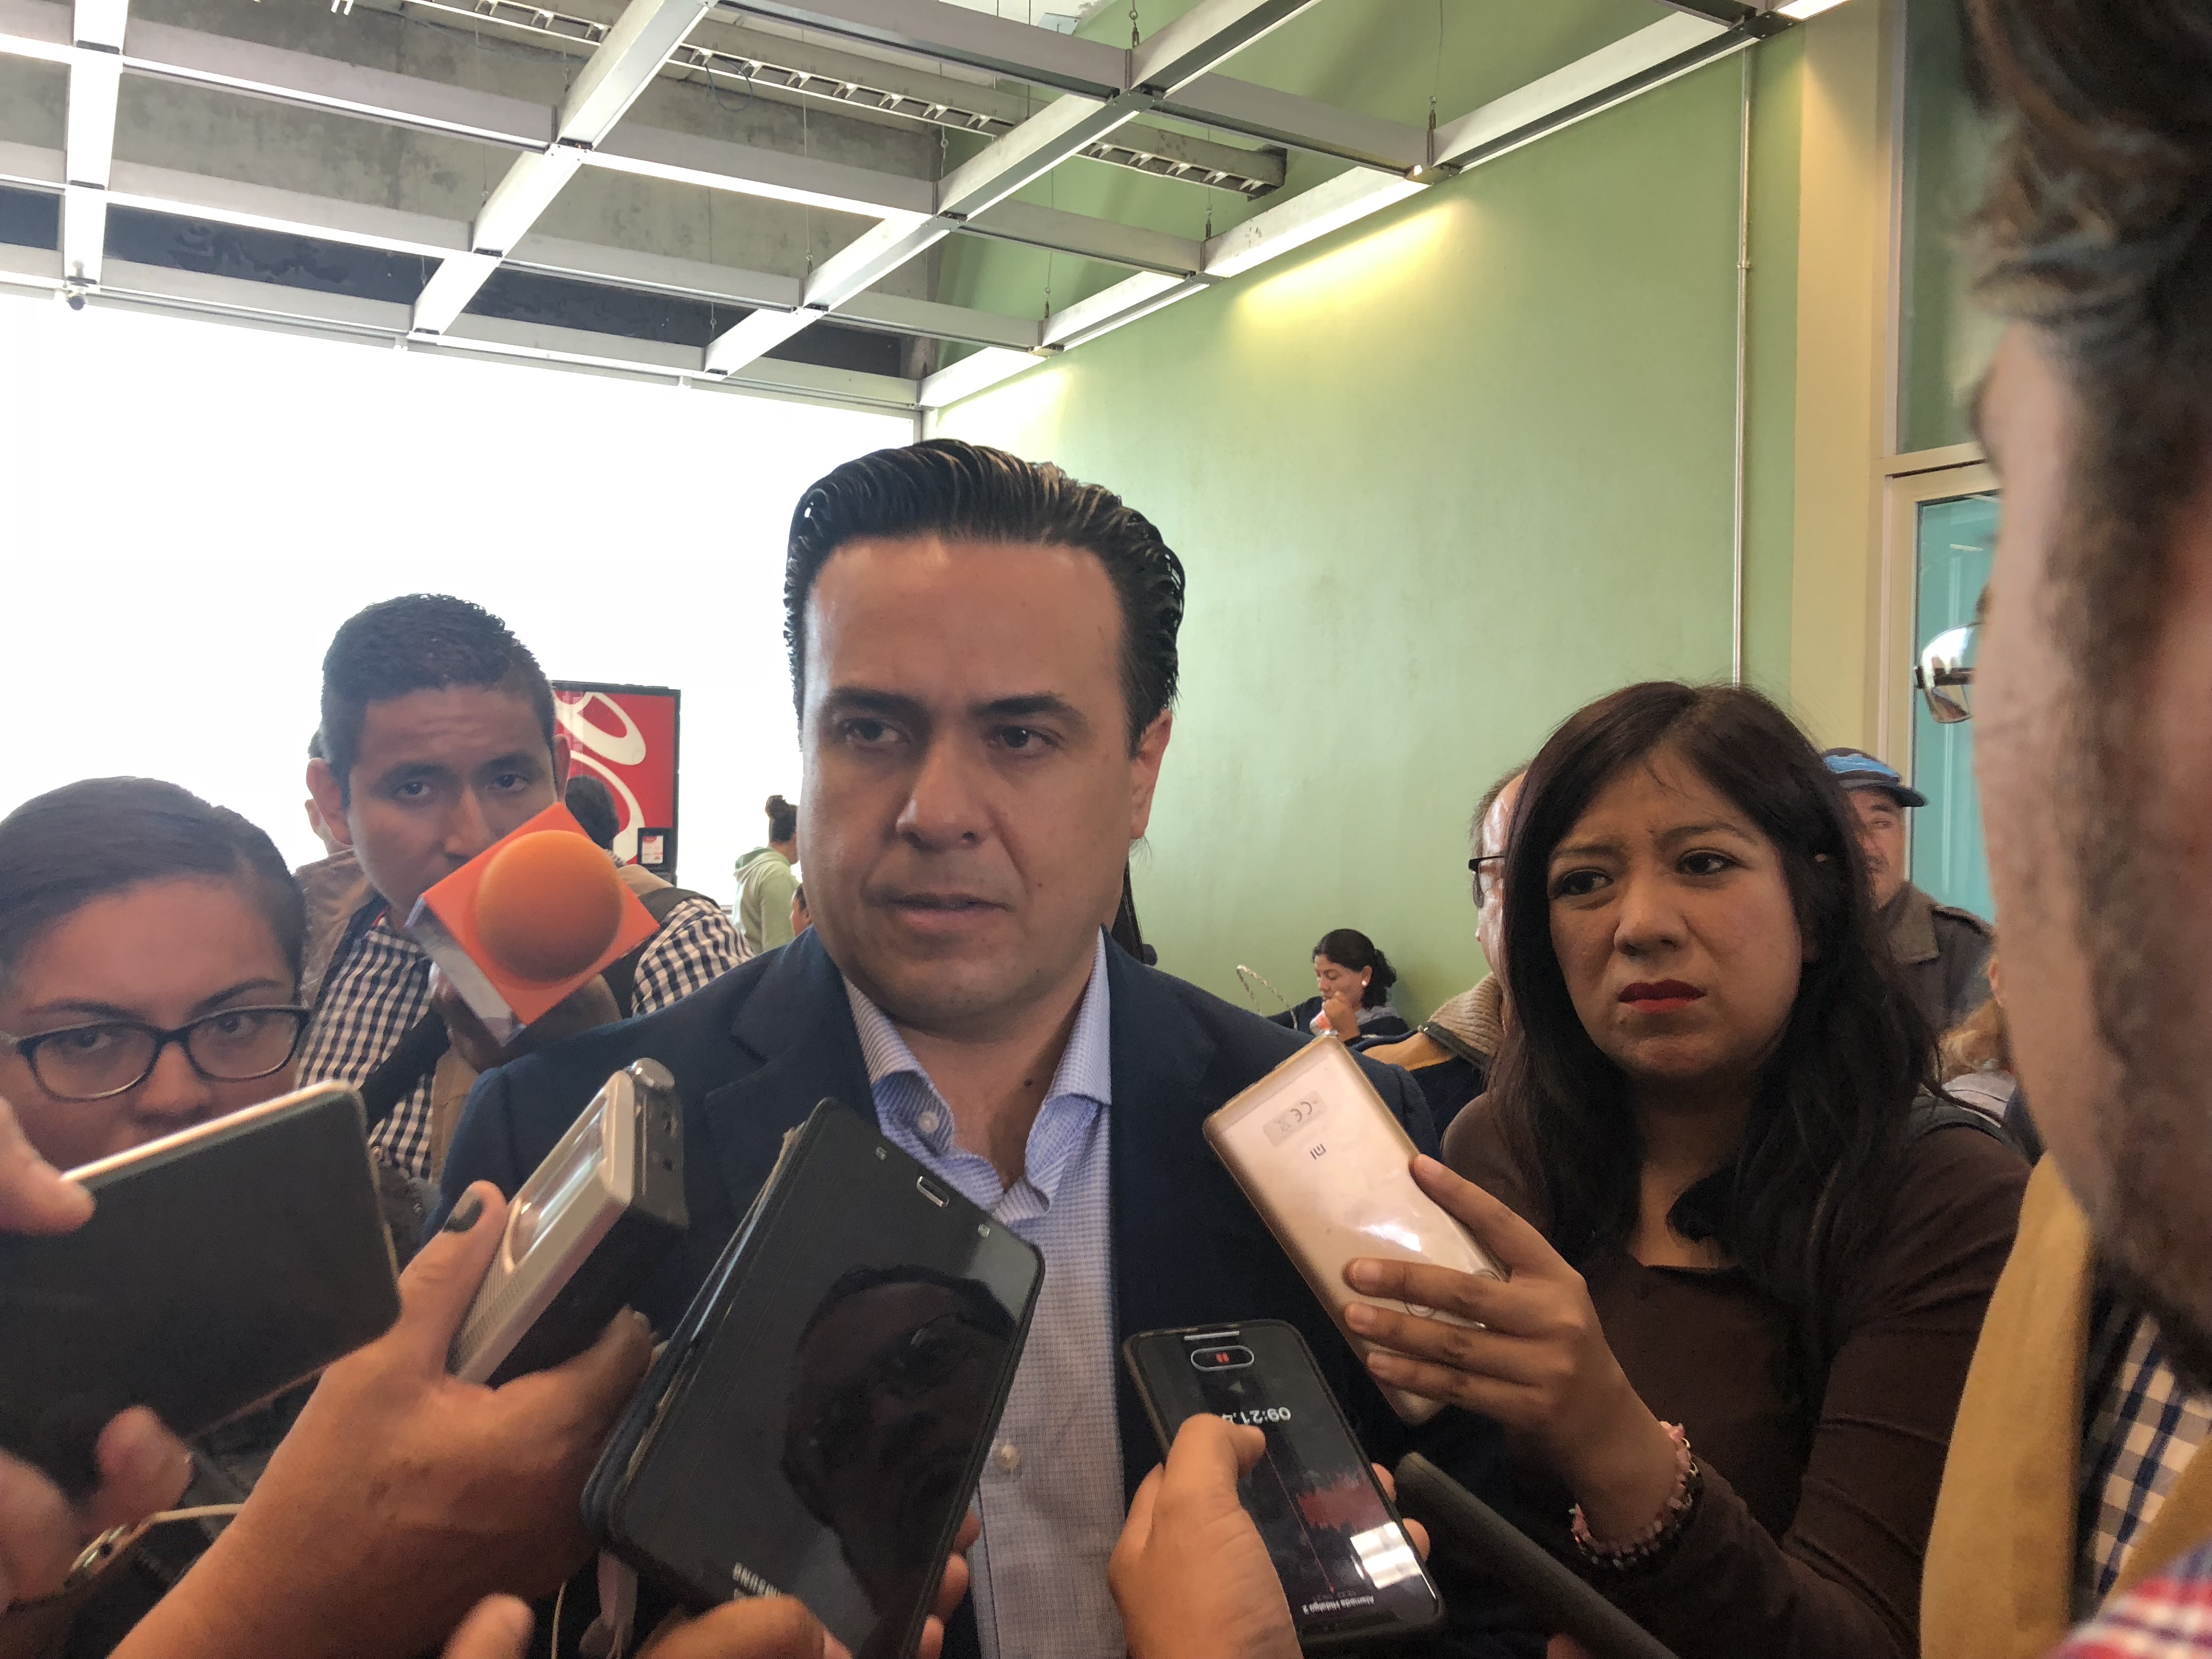  Migrantes podrían utilizar libramientos en su cruce por Querétaro: Luis Nava